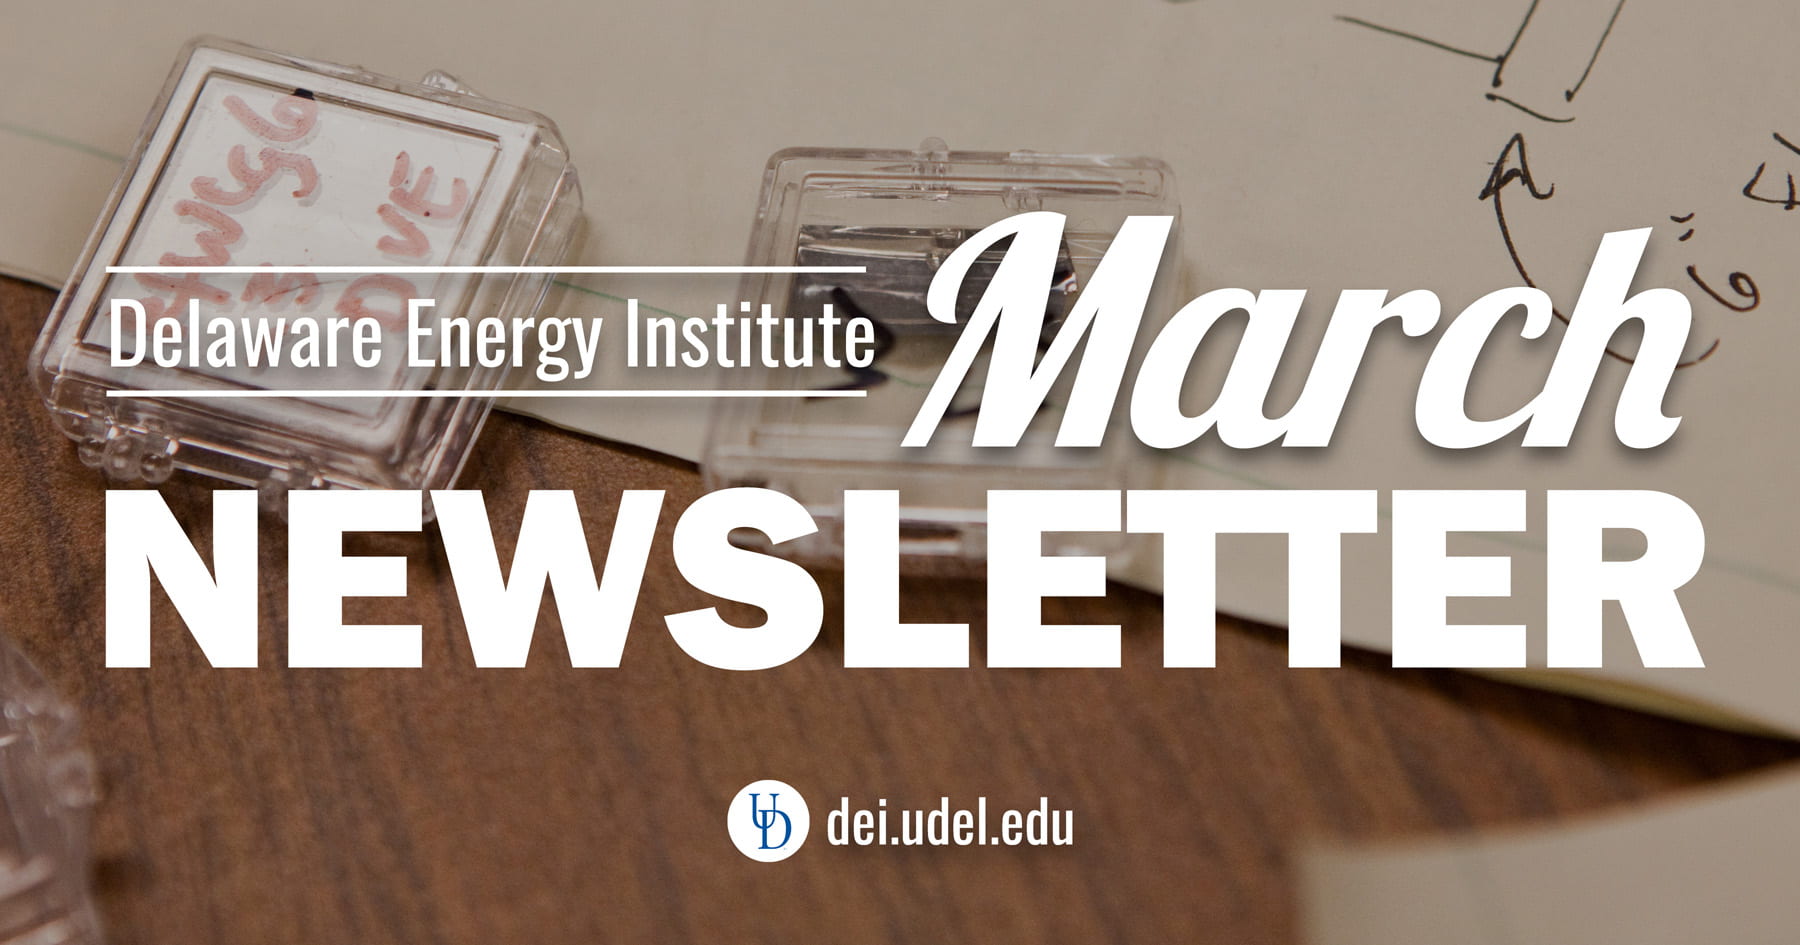 Delaware Energy Institute February Newsletter